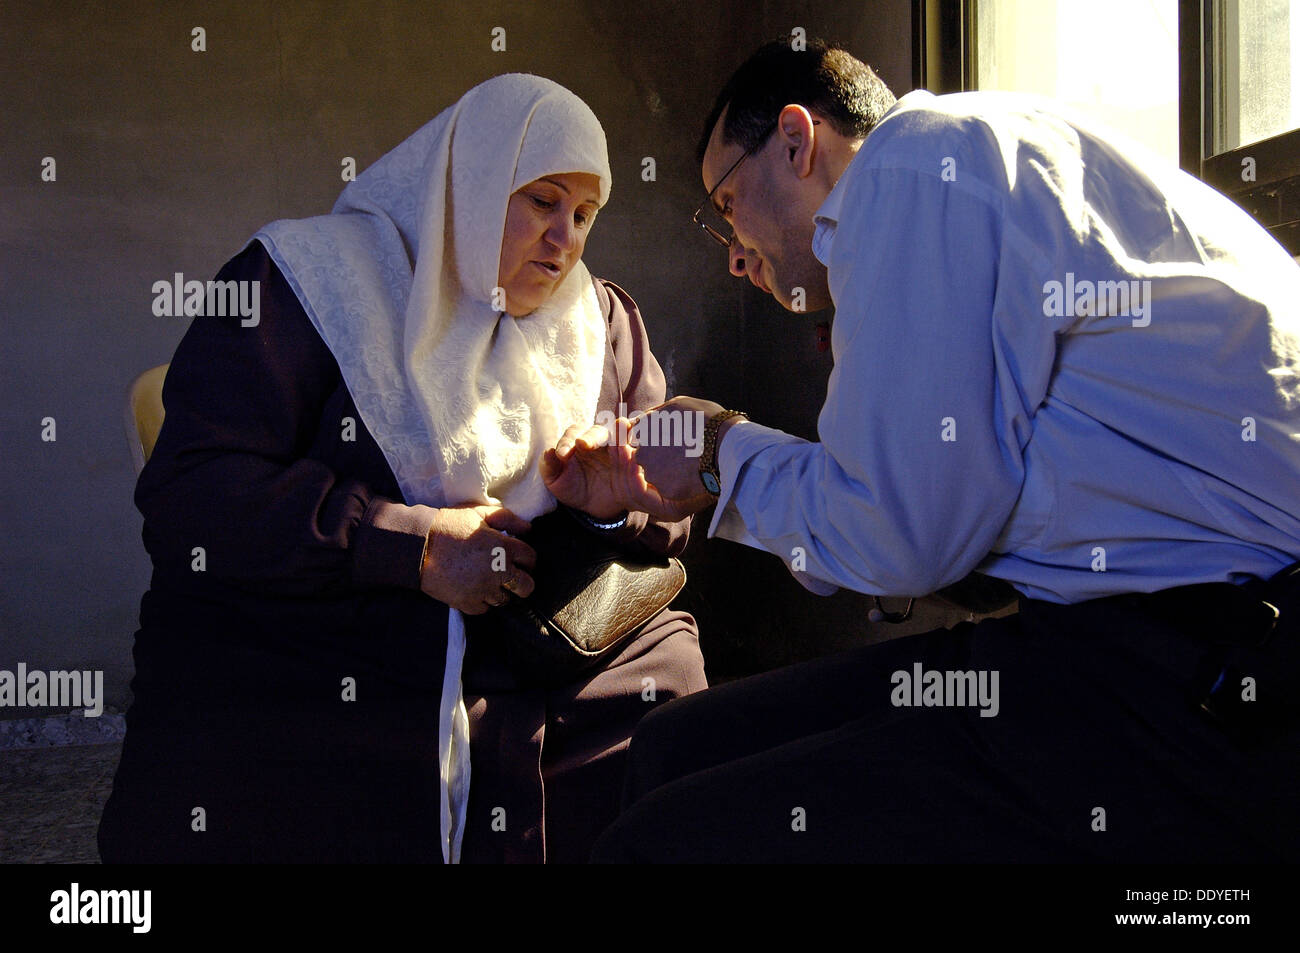 Un volontario arabo israeliano dei PHR Medici per i diritti umani che controllano una donna palestinese durante una visita DI clinica mobile PHR nella Cisgiordania Israele Foto Stock